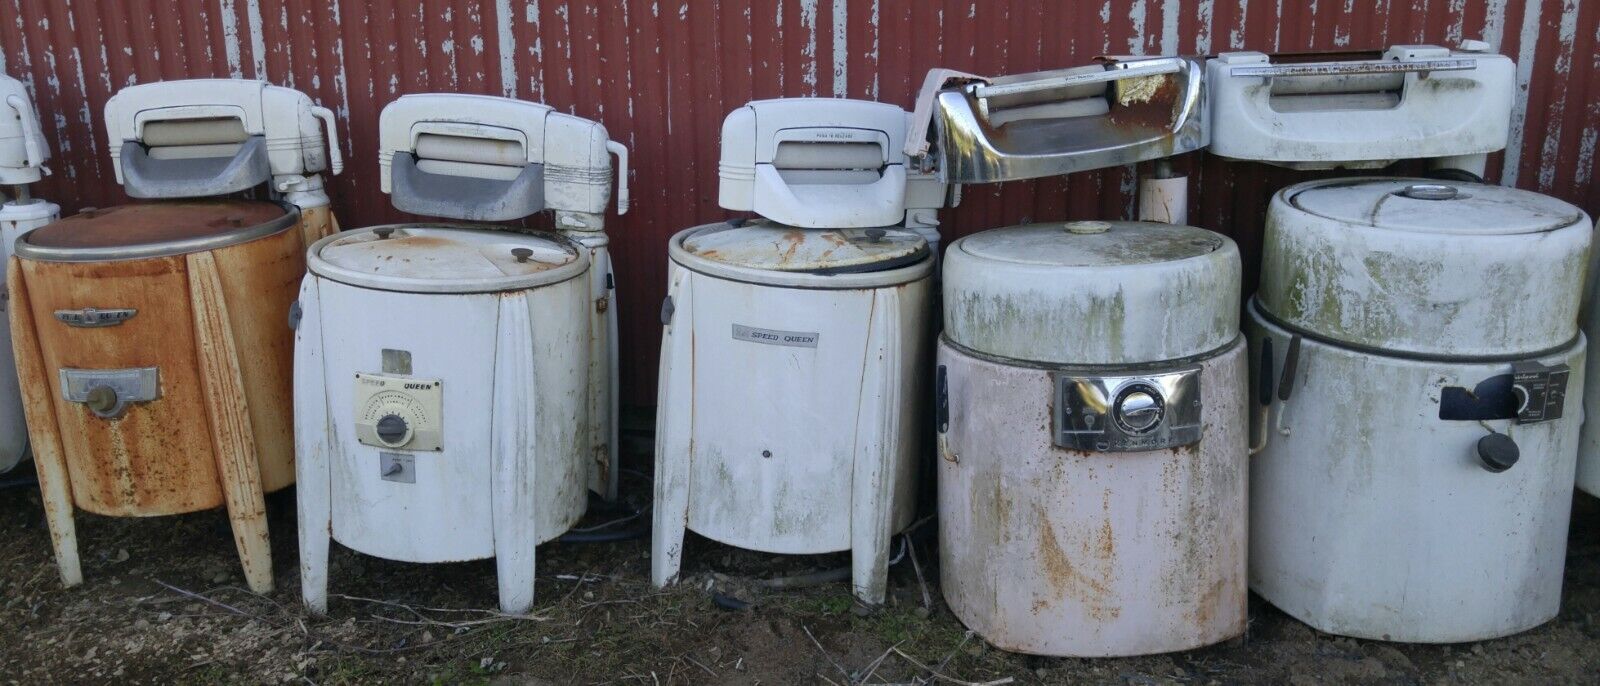 Collection Of 29 Antique Wringer Washing Machines Vintage Ringer Washer Machine Без бренда - фотография #4